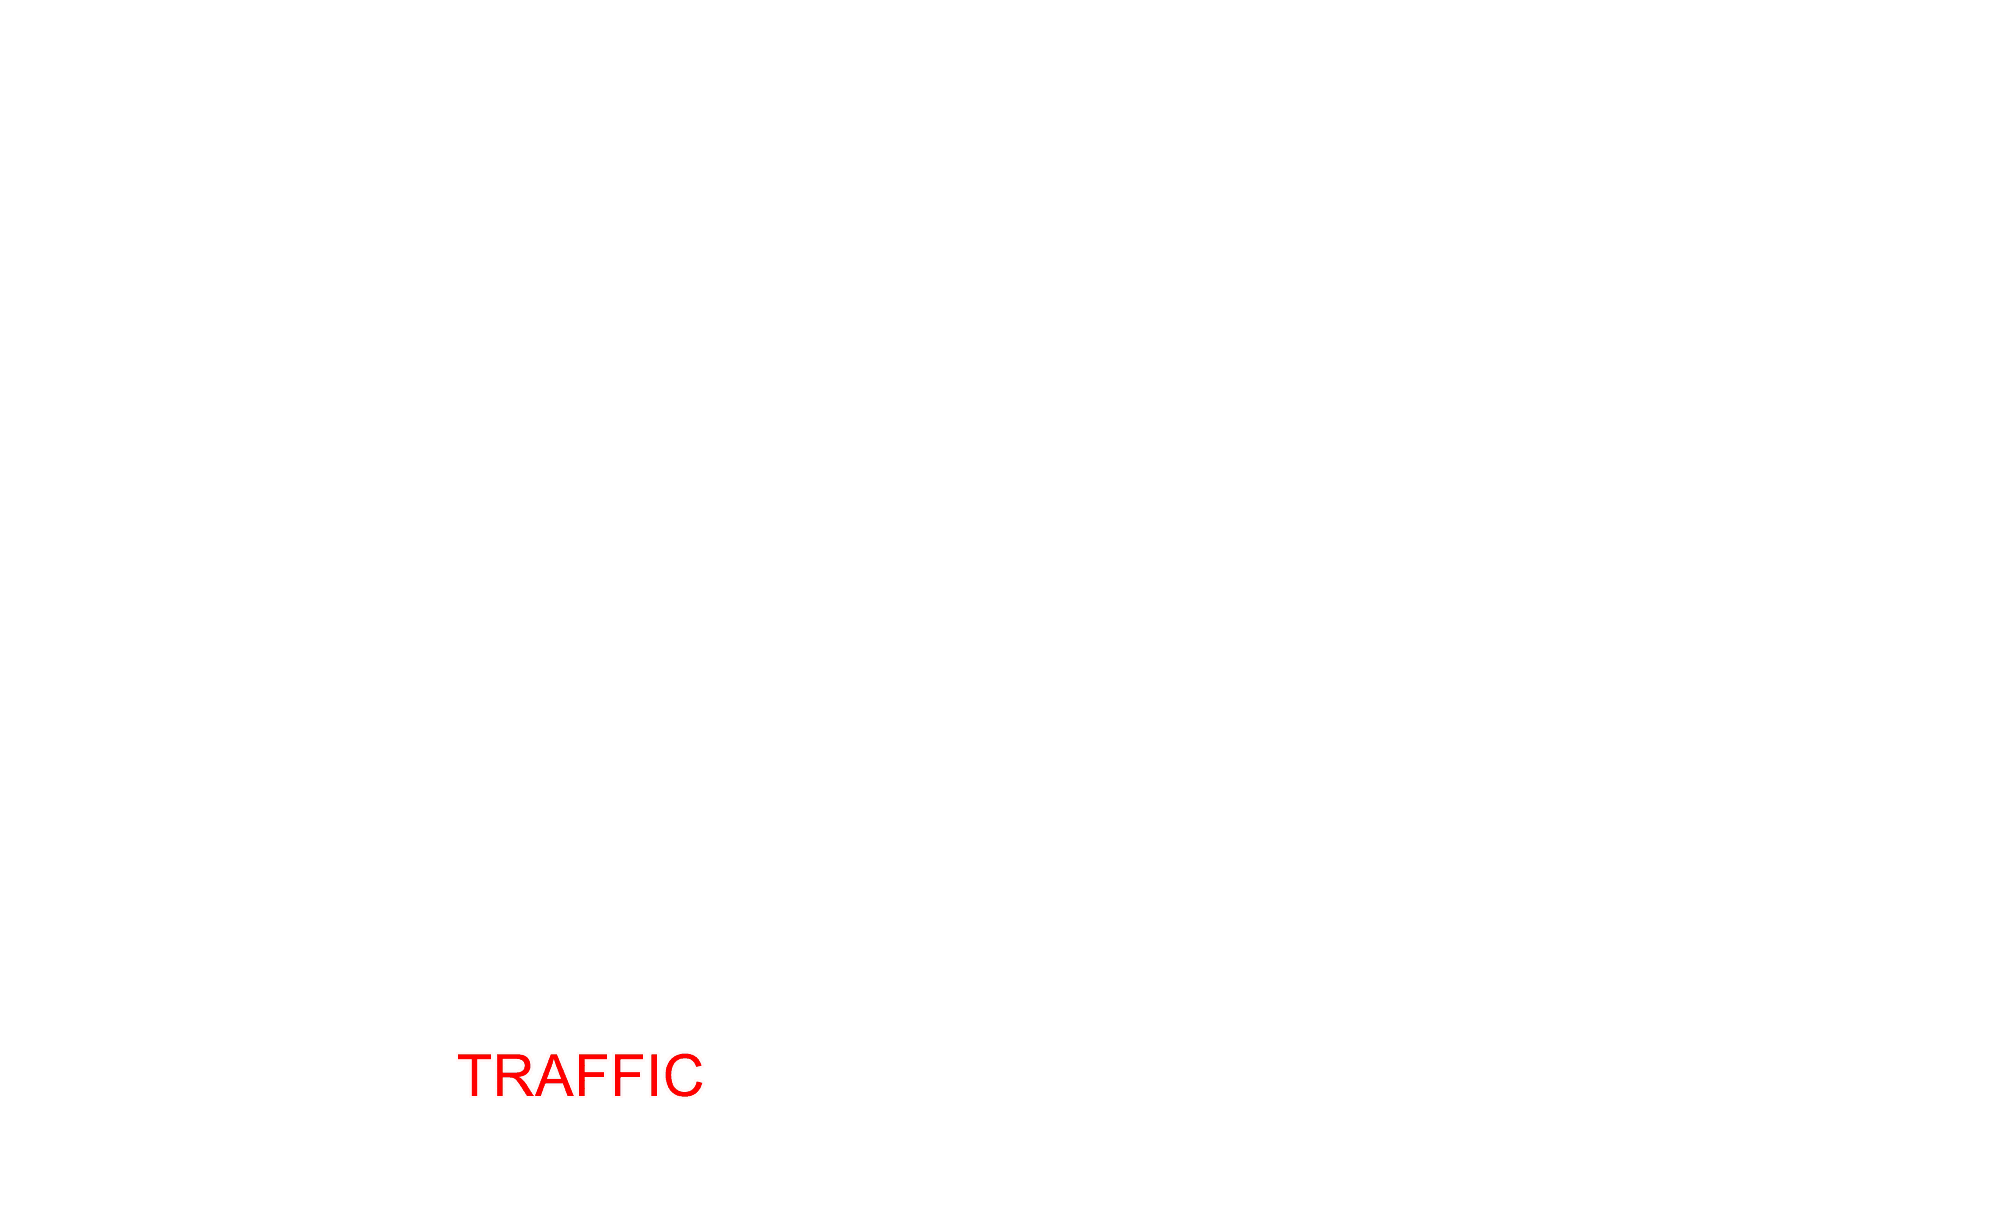 Text: traffic